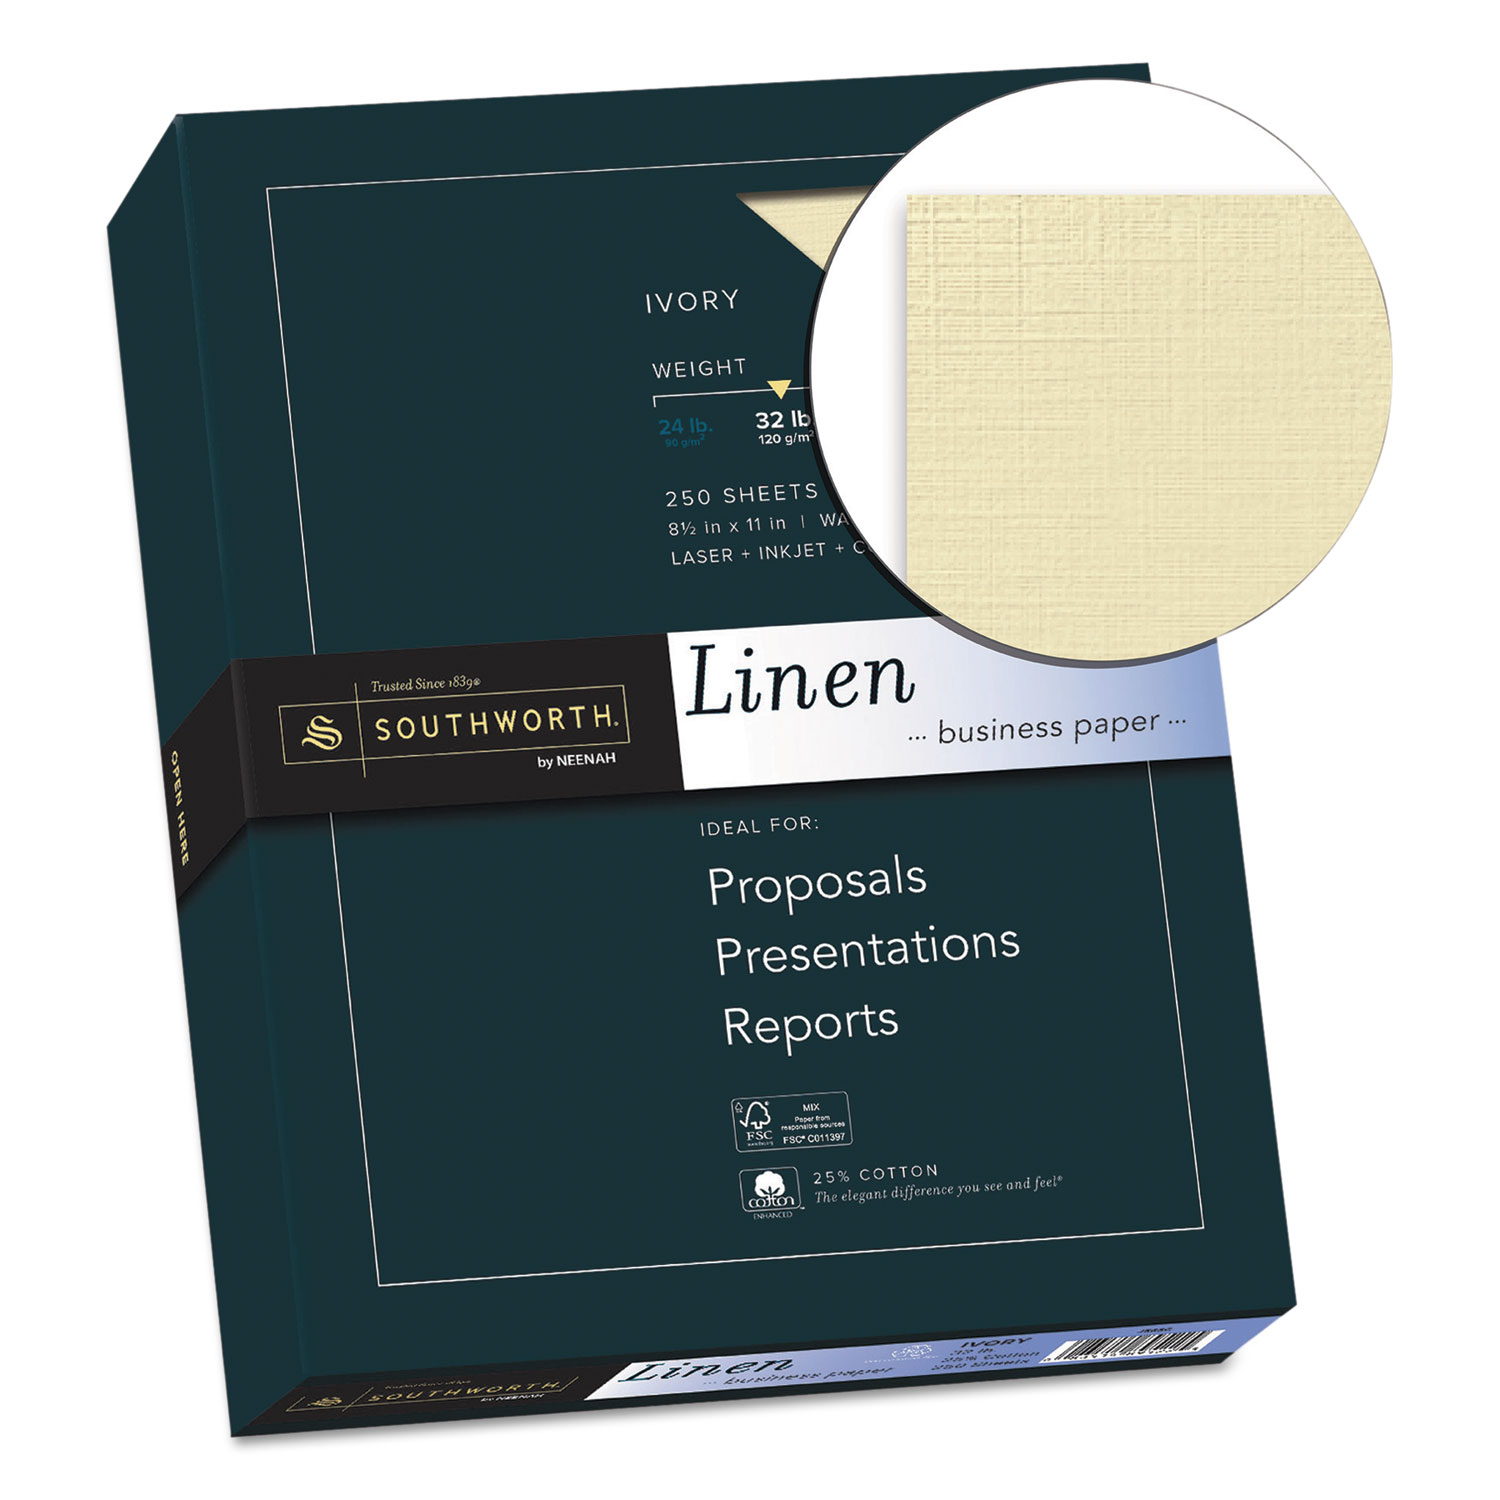 25% Cotton Linen Business Paper, 32lb, 8 1/2 x 11, Ivory, 250 Sheets